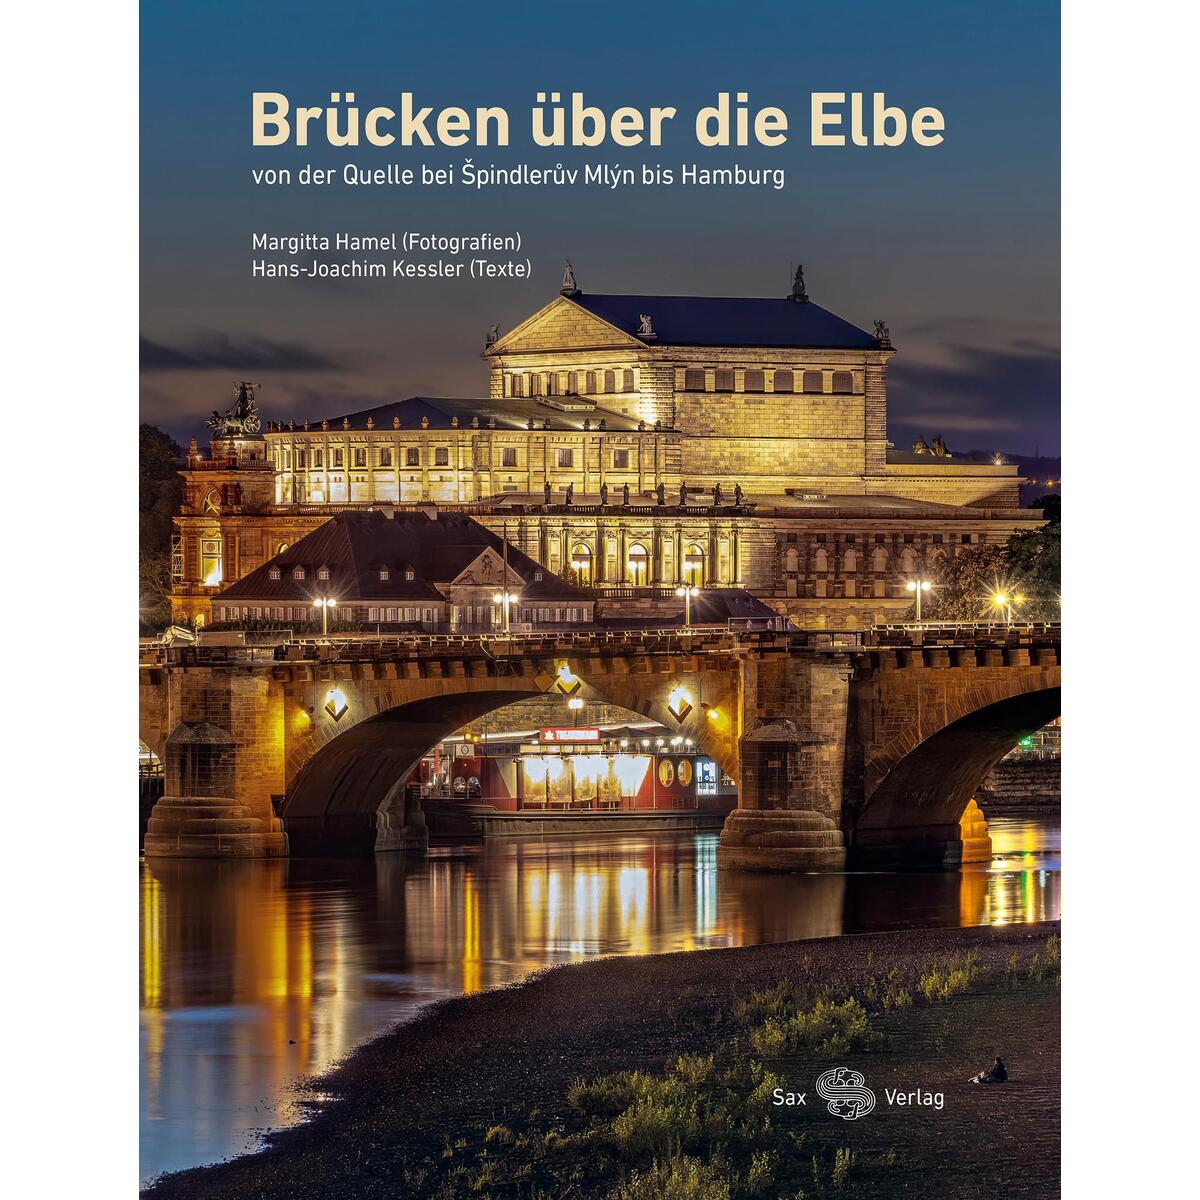 Brücken über die Elbe von Sax Verlag